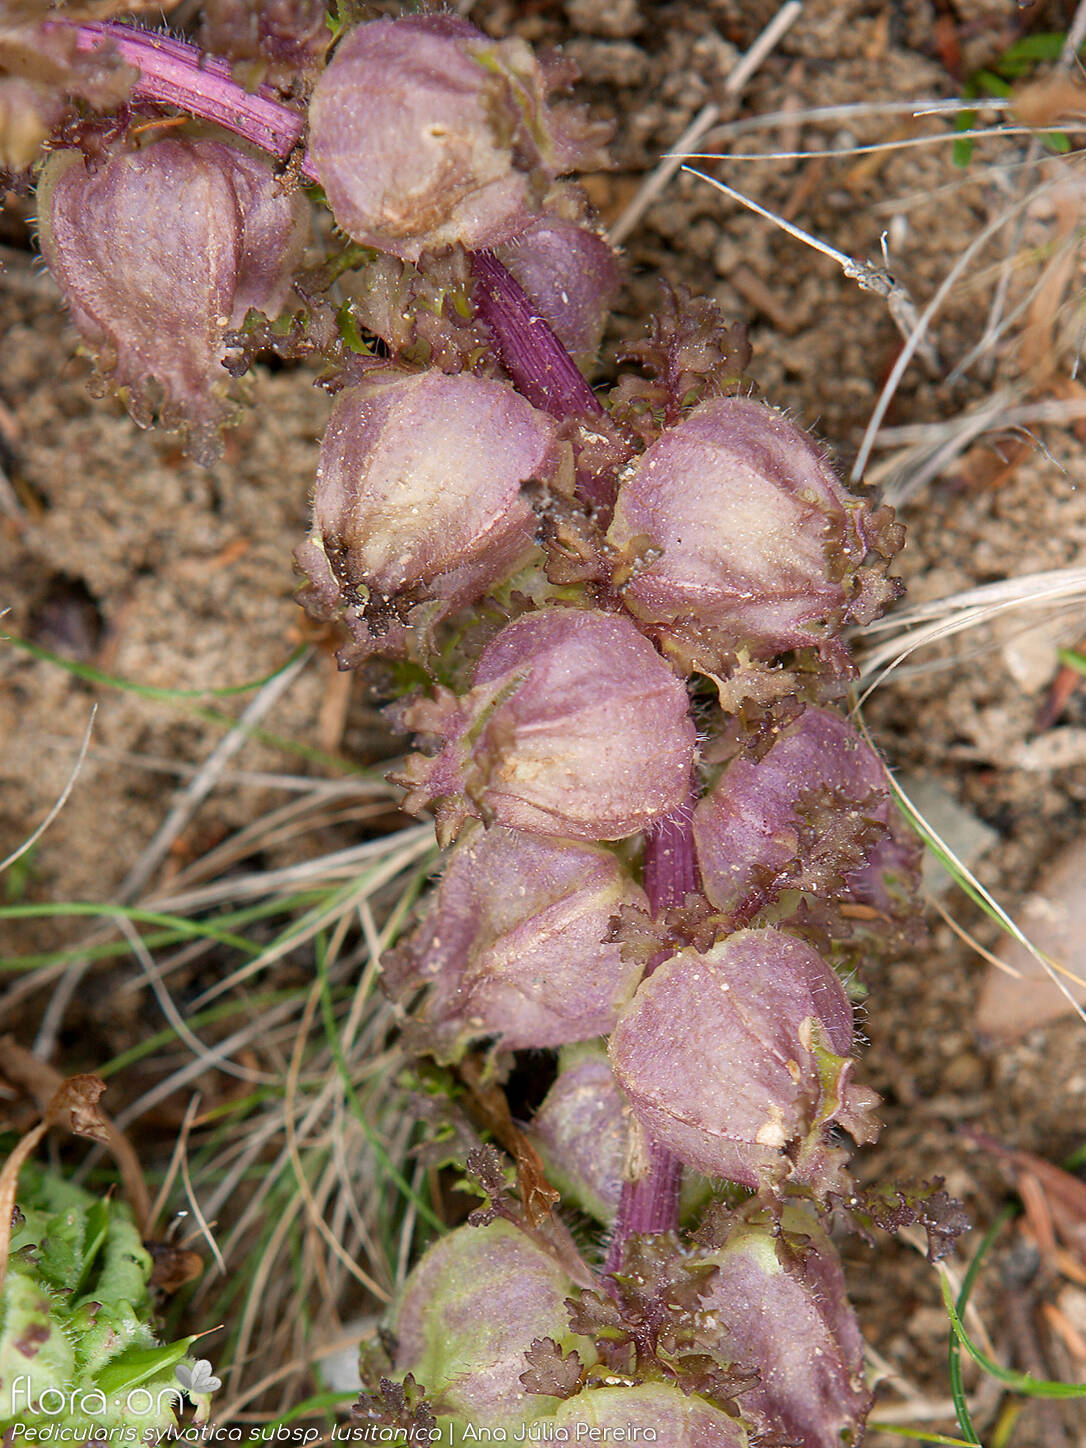 Pedicularis sylvatica lusitanica - Fruto | Ana Júlia Pereira; CC BY-NC 4.0